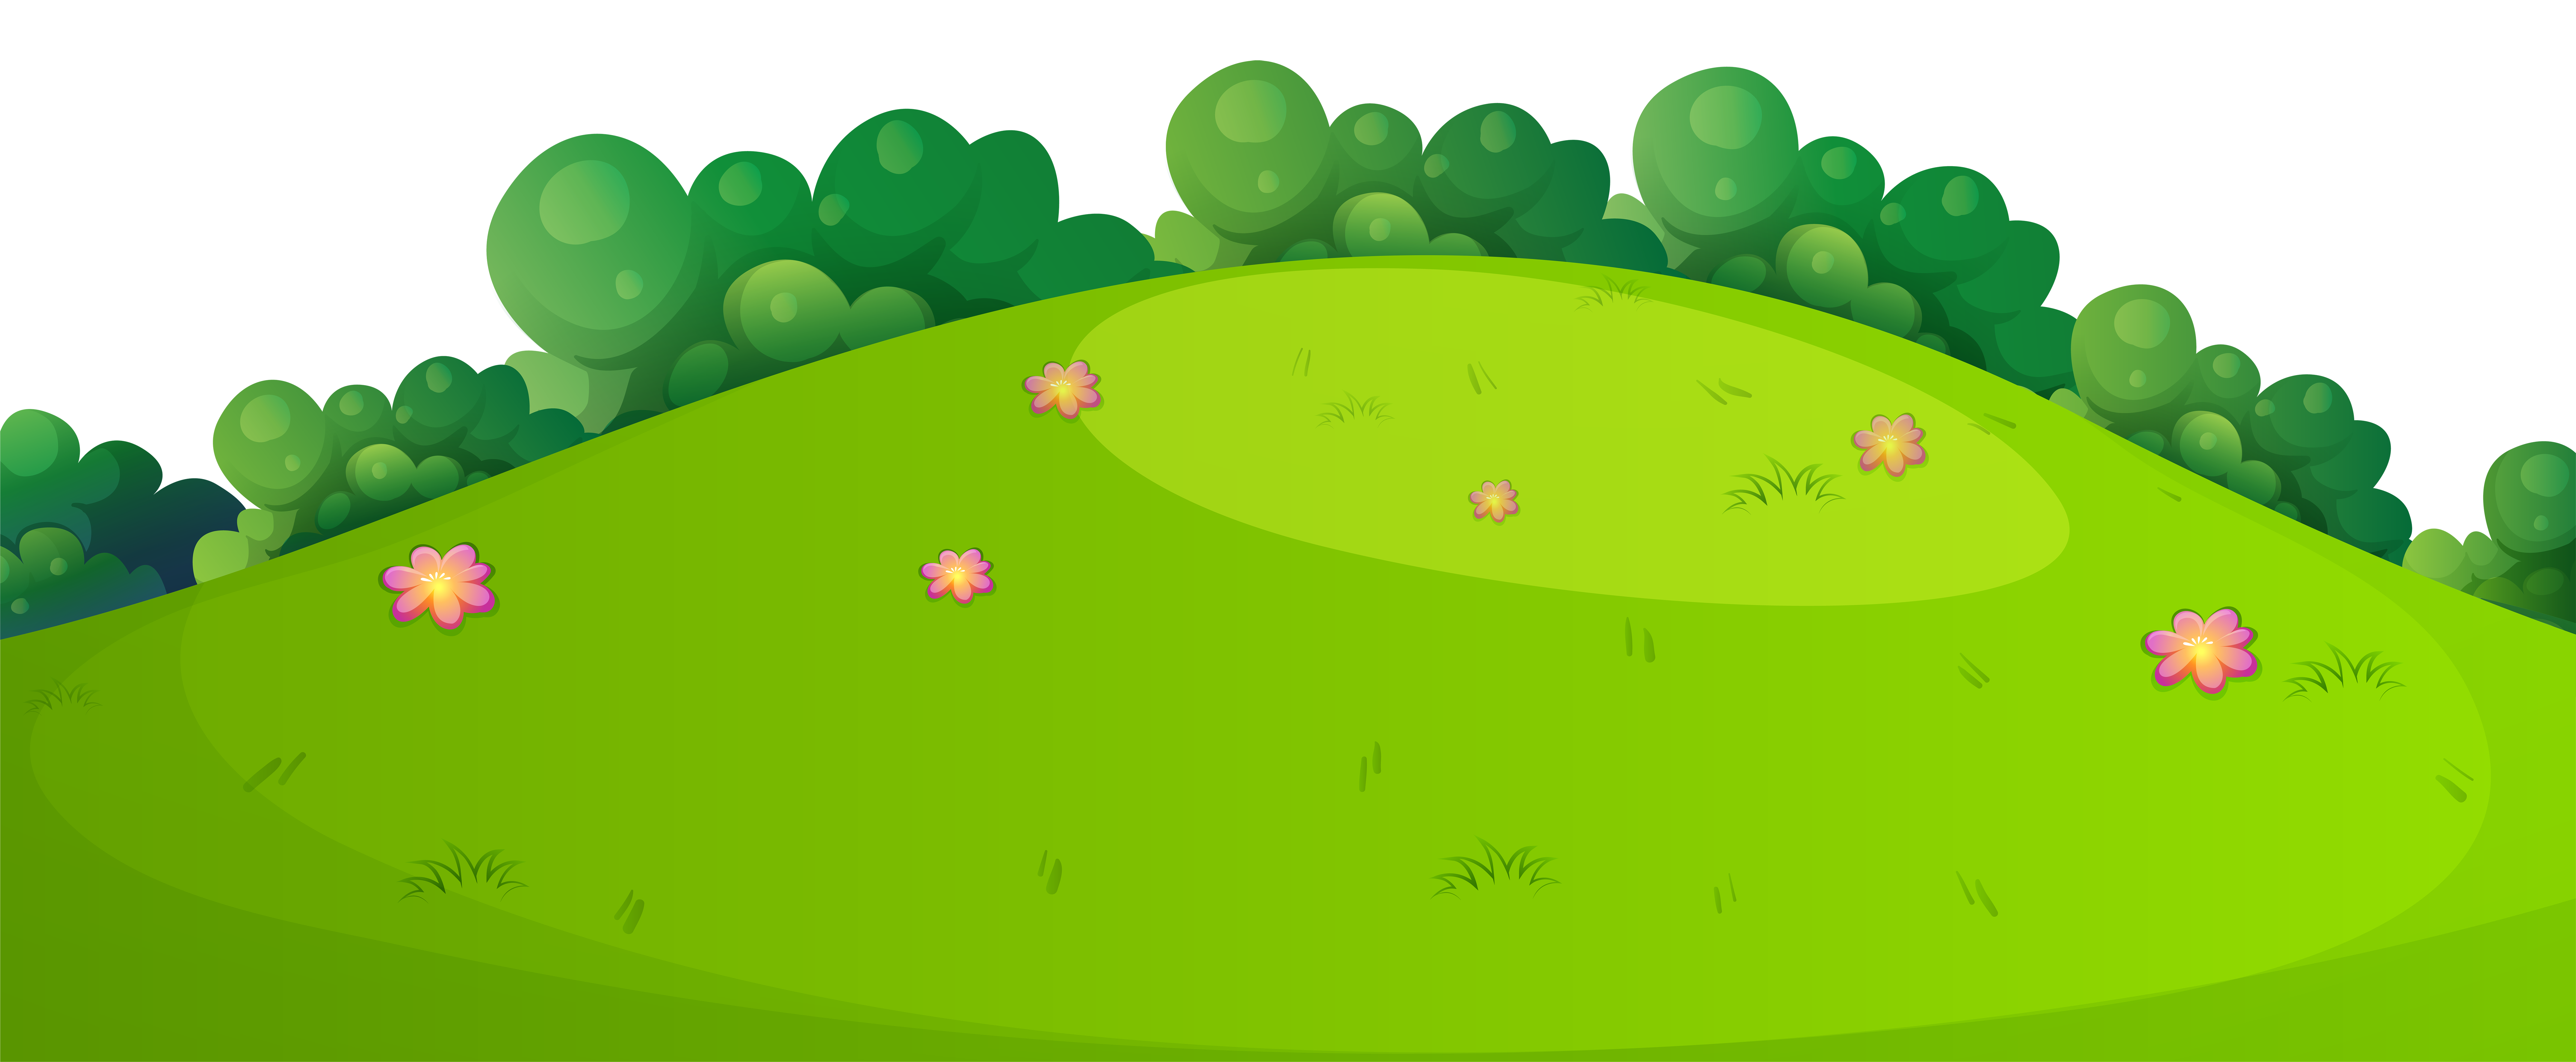 ground clipart green grass